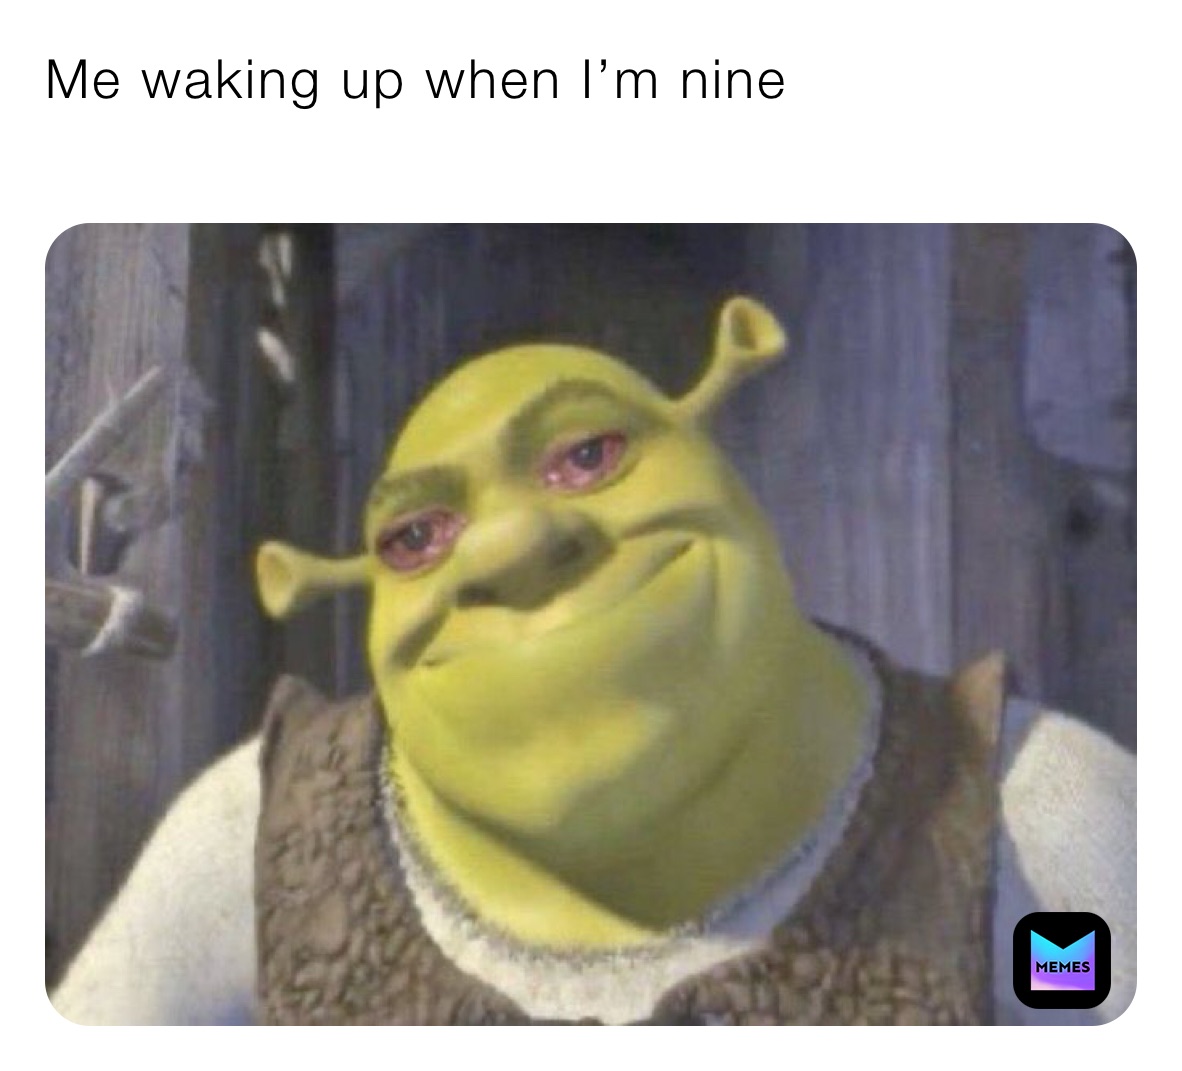 Me waking up when I’m nine
￼￼￼￼